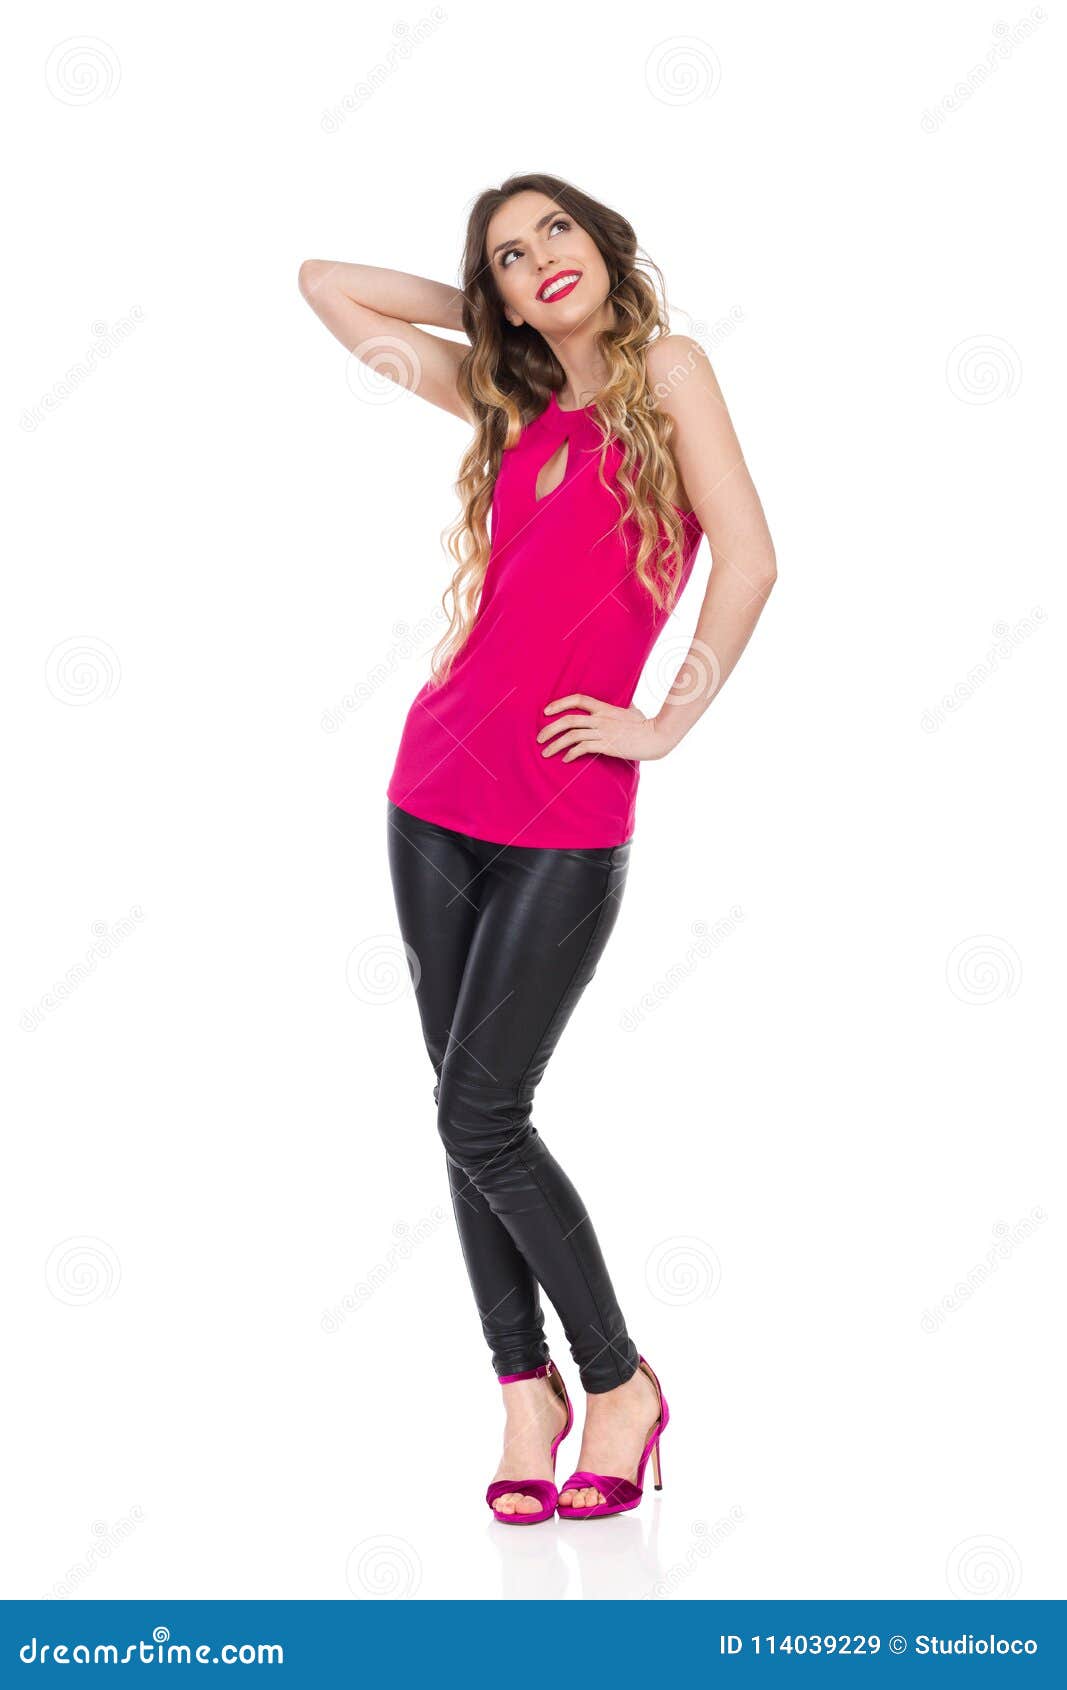 La Mujer Hermosa Sonriente En Pantalones De Cuero Superiores Y Negros Del Rosa Esta Mirando Para Arriba Imagen De Archivo Imagen De Feliz Joven 114039229